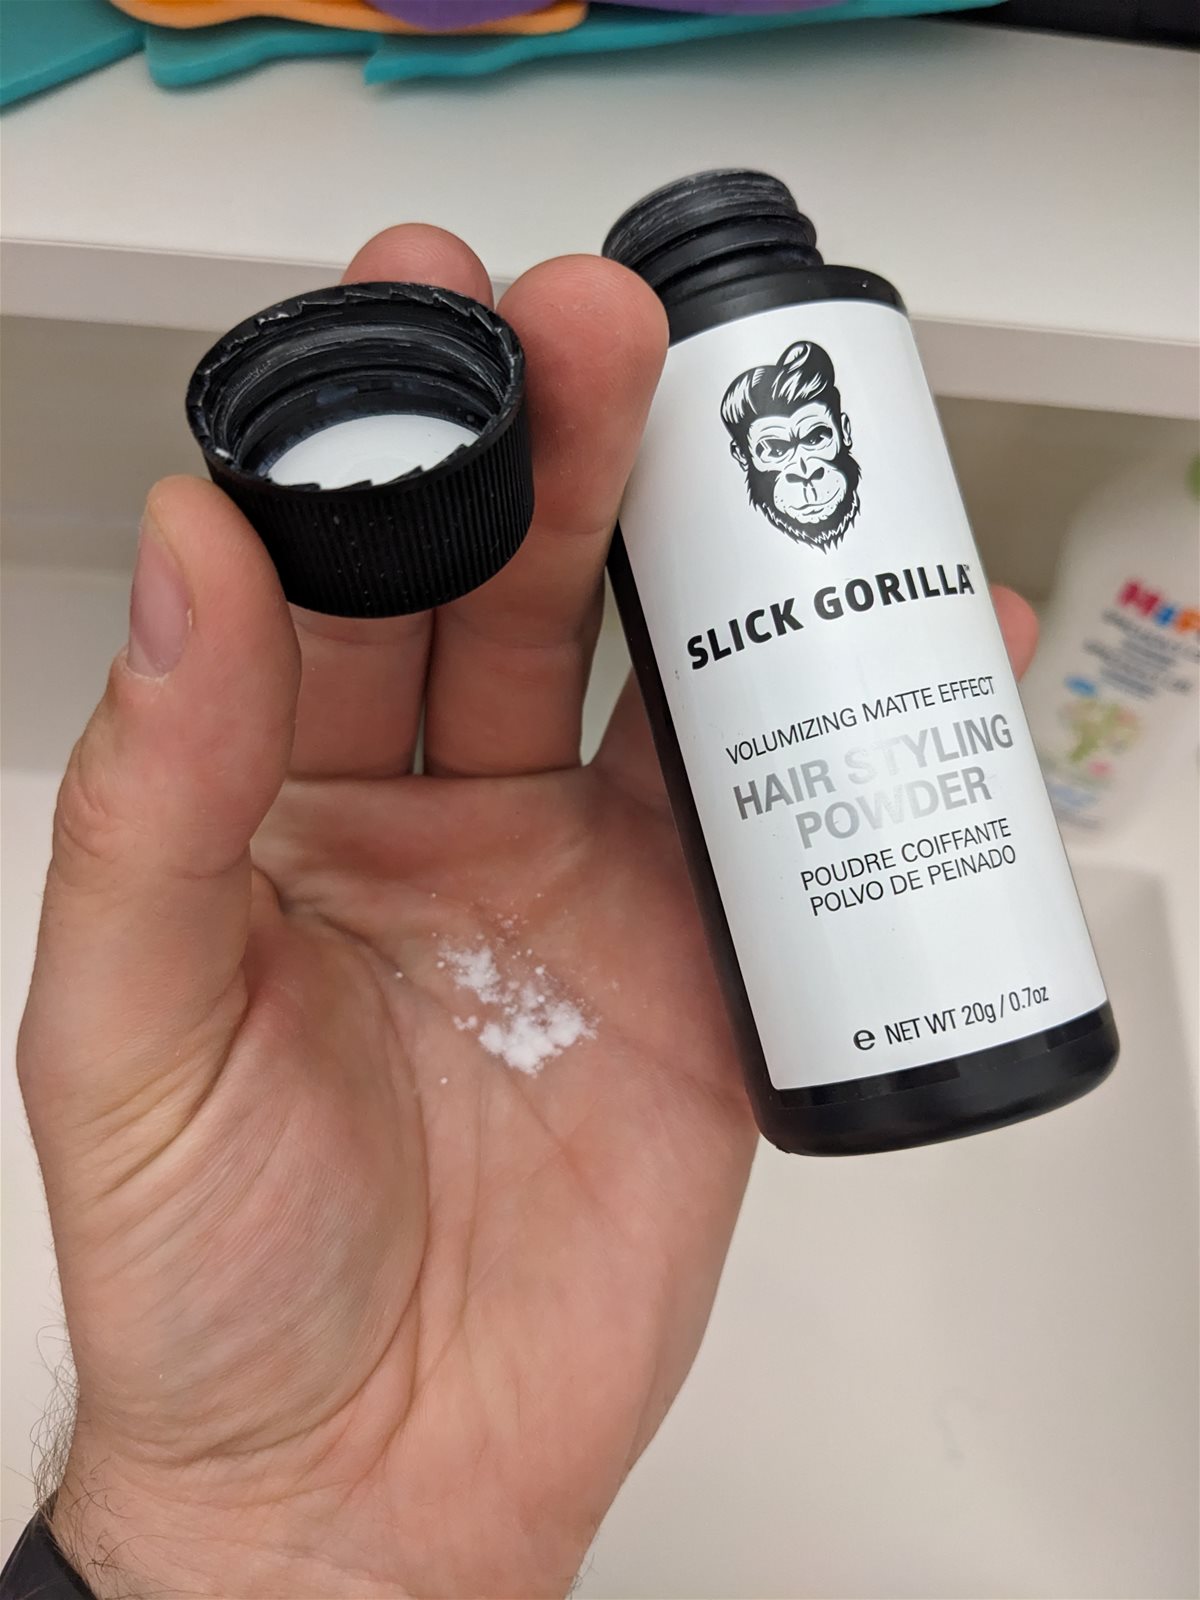 Slick Gorilla Hair Styling Powder (20g/0.7oz)